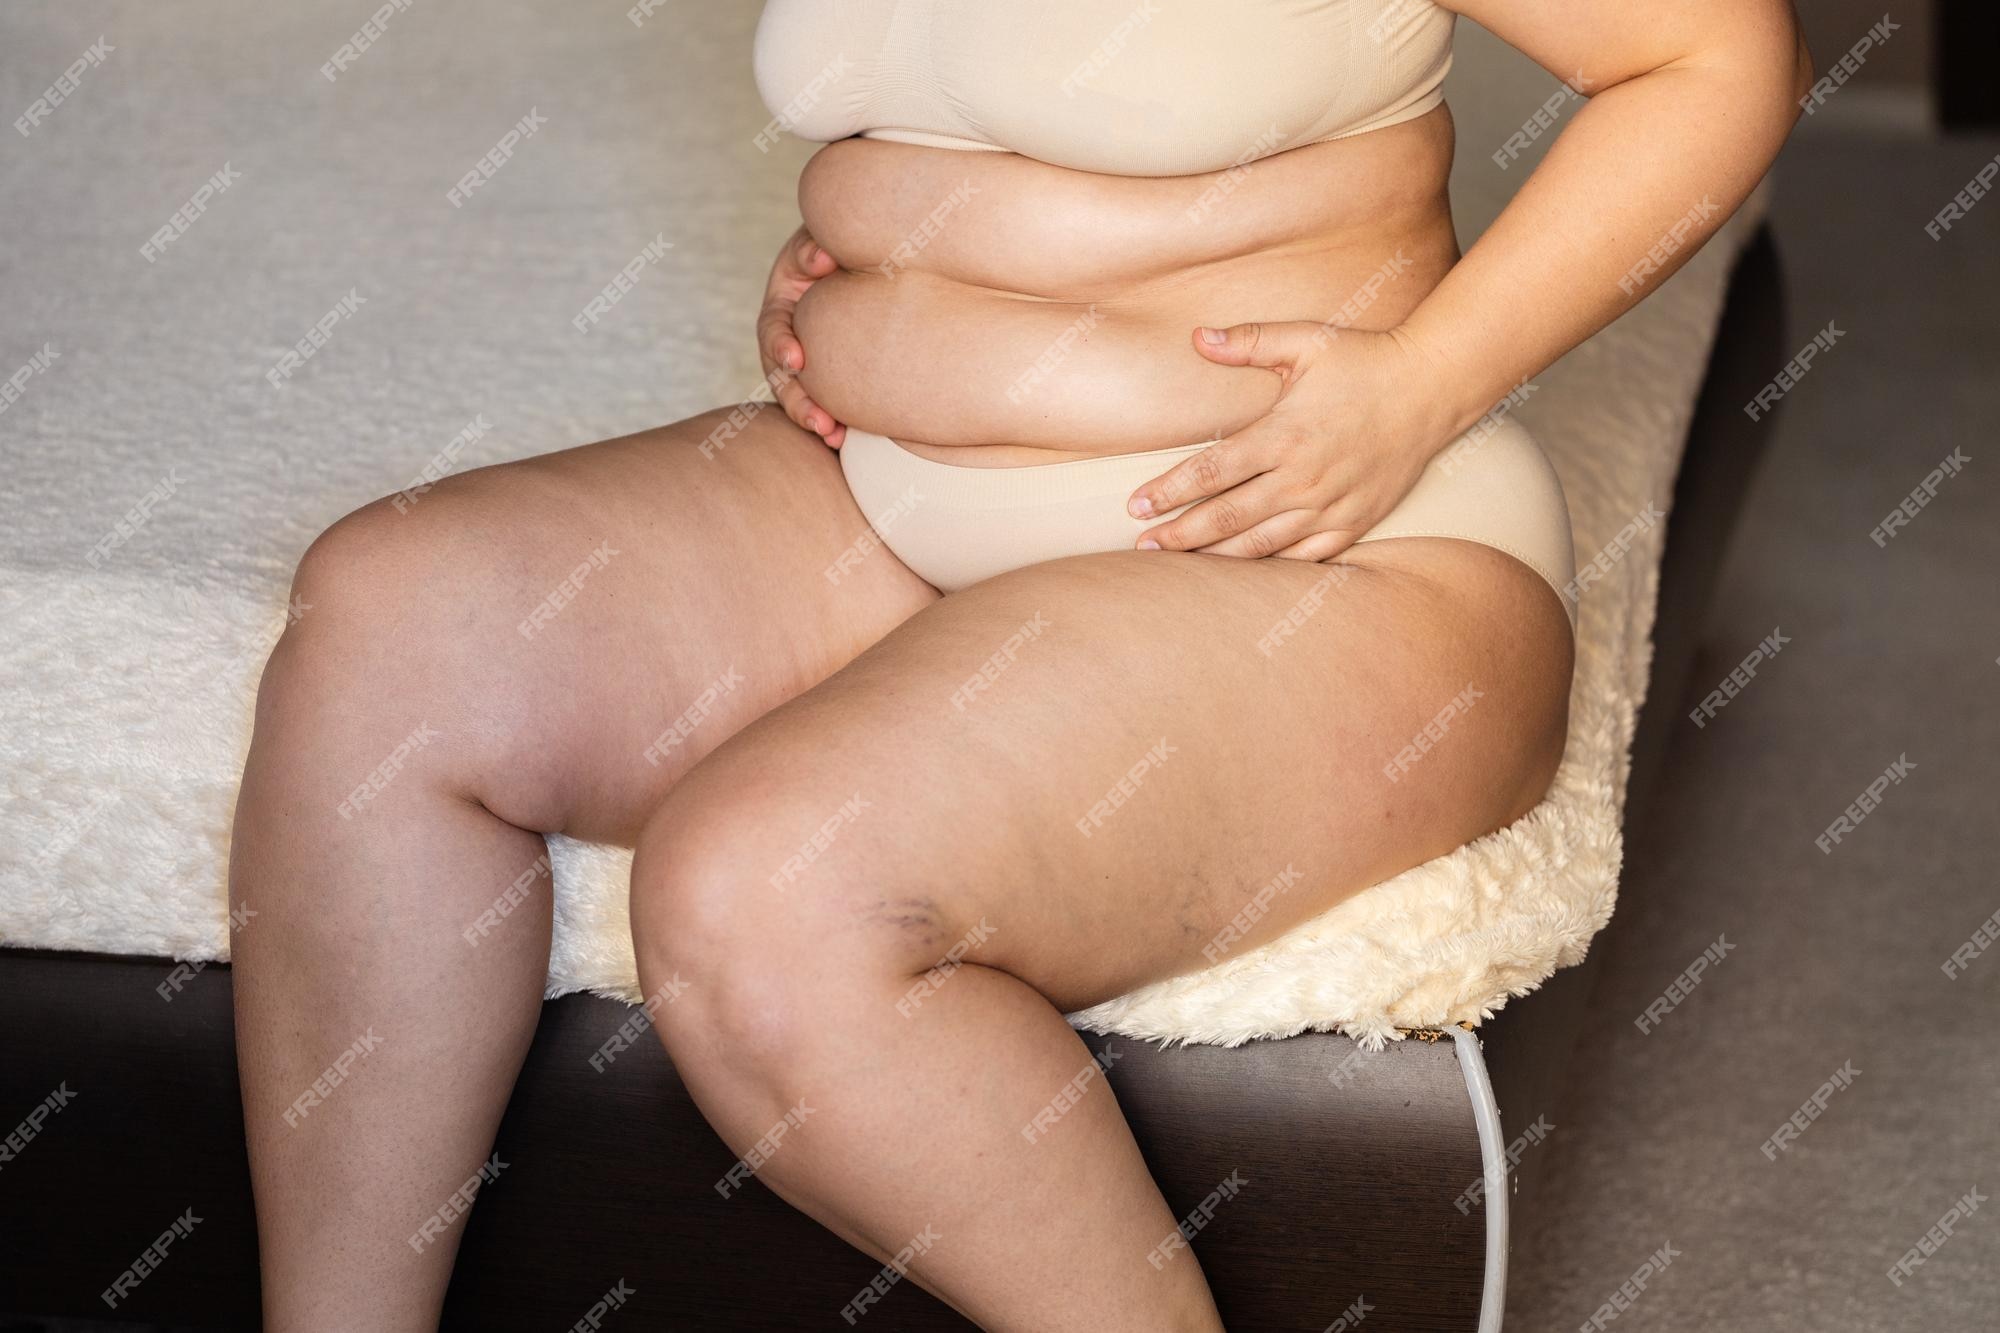 annamaria lupala add fat obese naked women photo